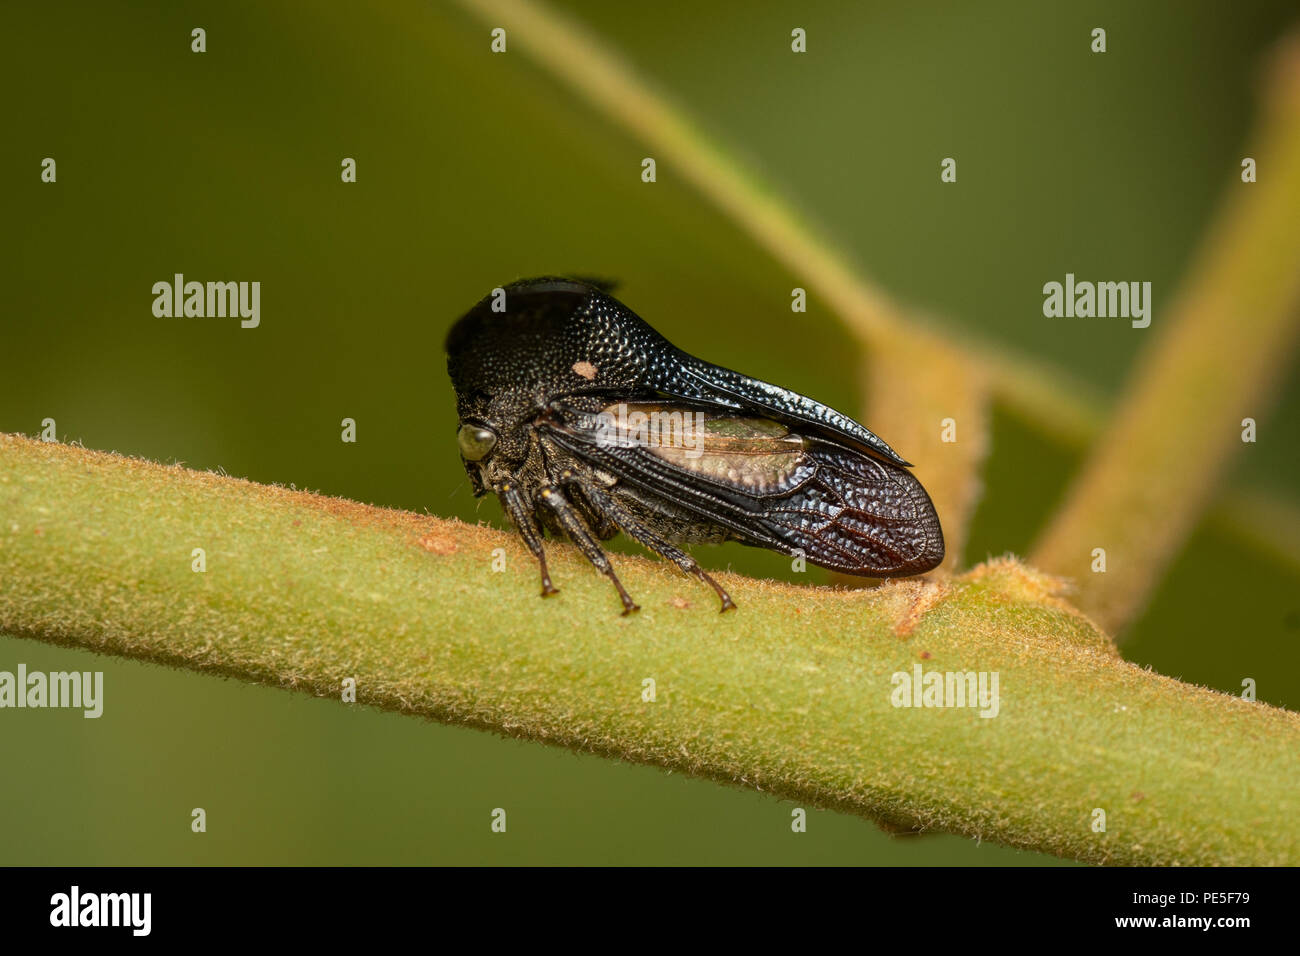 Centrotypus sp. Treehoppers alo conosciuta come Thorn bugs sono membri della famiglia Membracidae, un gruppo di insetti legate a le cicale e il leafhoppe Foto Stock